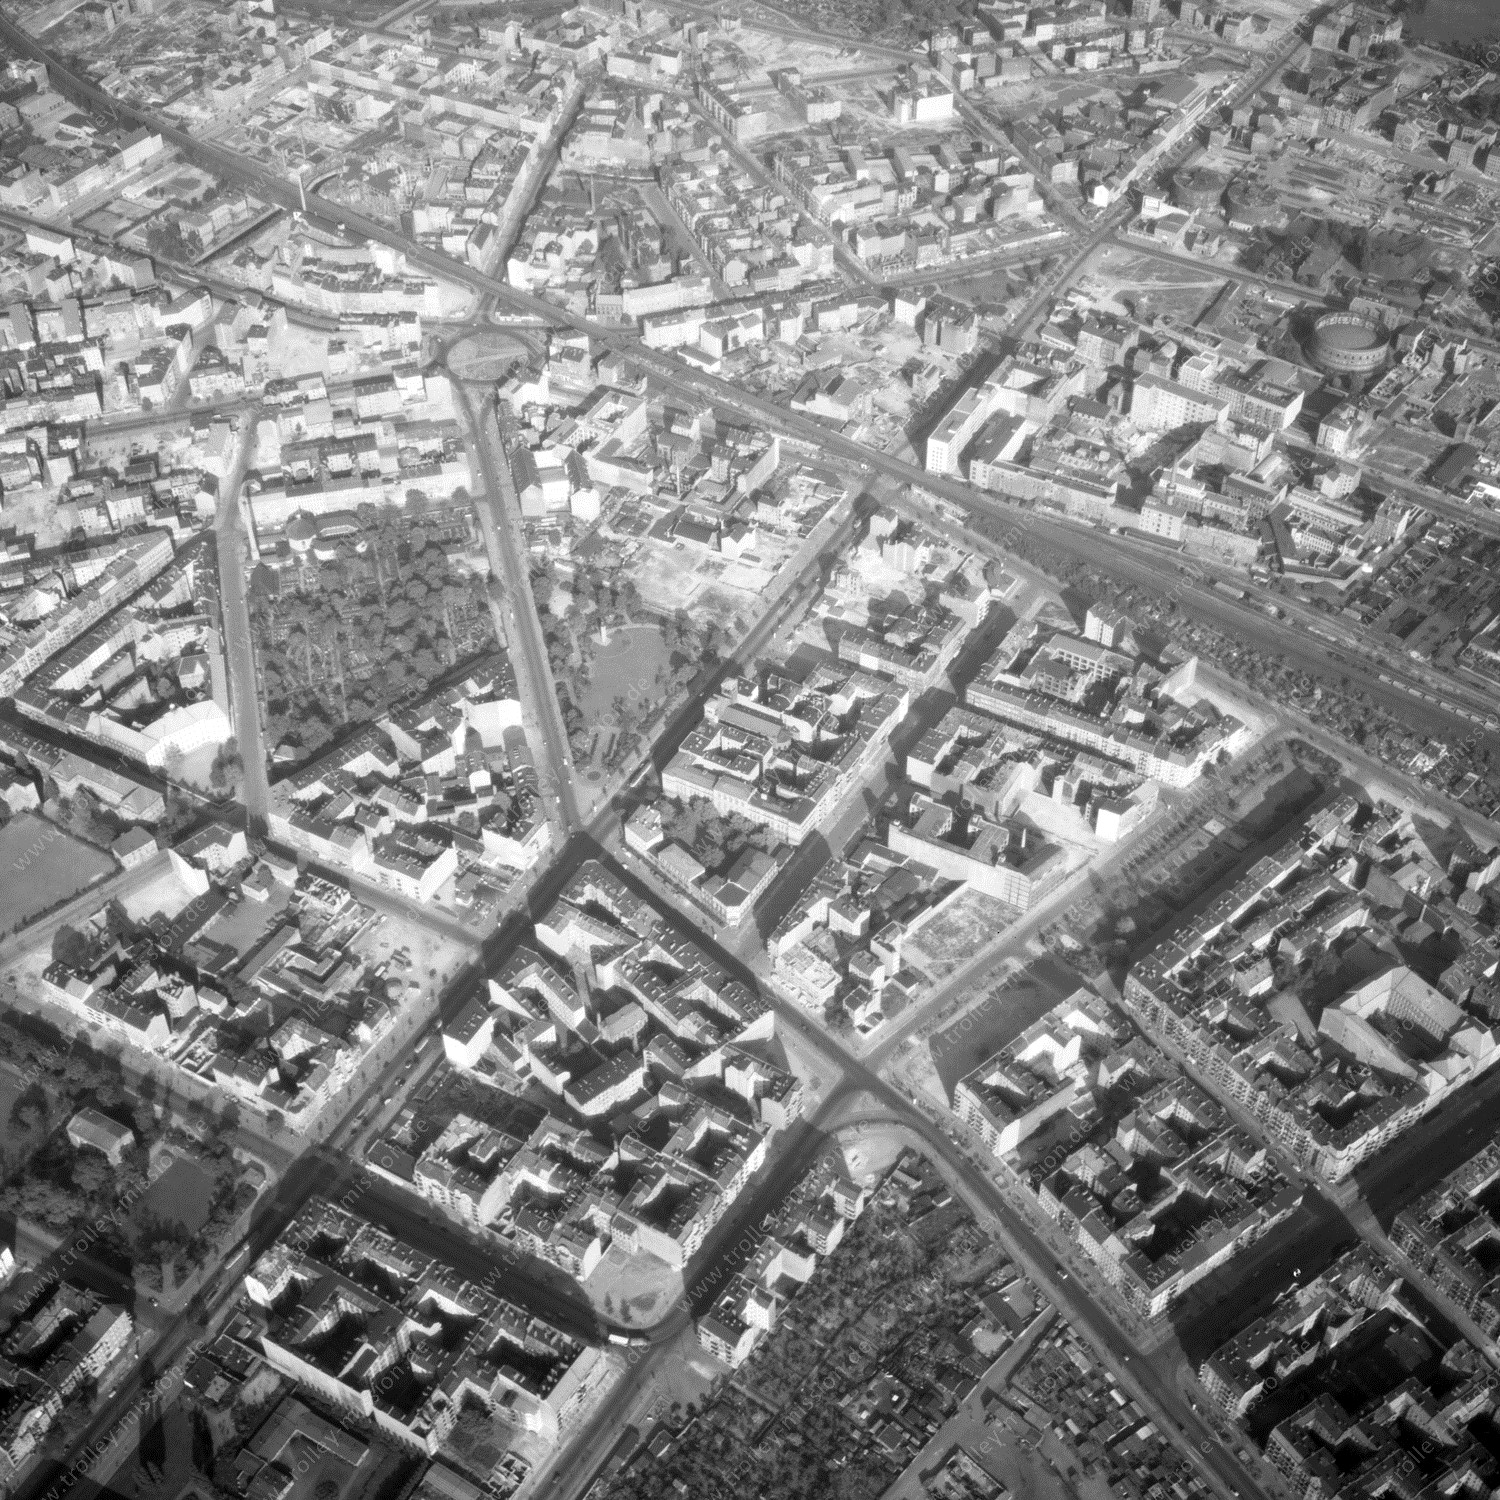 Alte Fotos und Luftbilder von Berlin - Luftbildaufnahme Nr. 08 - Historische Luftaufnahmen von West-Berlin aus dem Jahr 1954 - Flugstrecke Papa